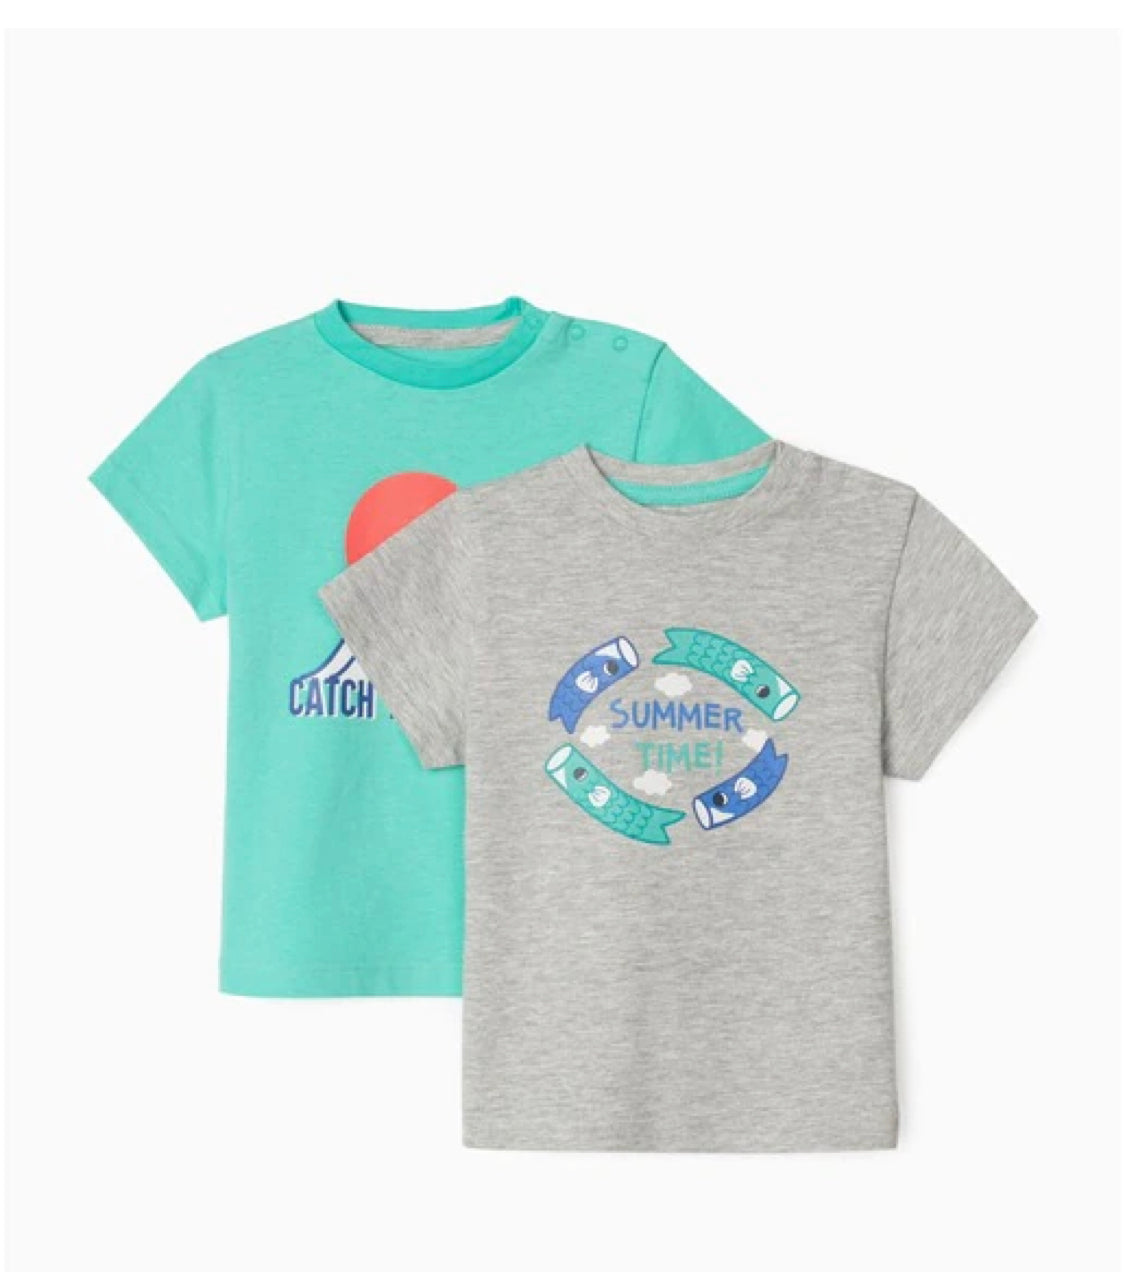 Pack de 2 camisetas v de bebé niñode algodón 100% con estampado frontal lolimariscalmoda 9.99